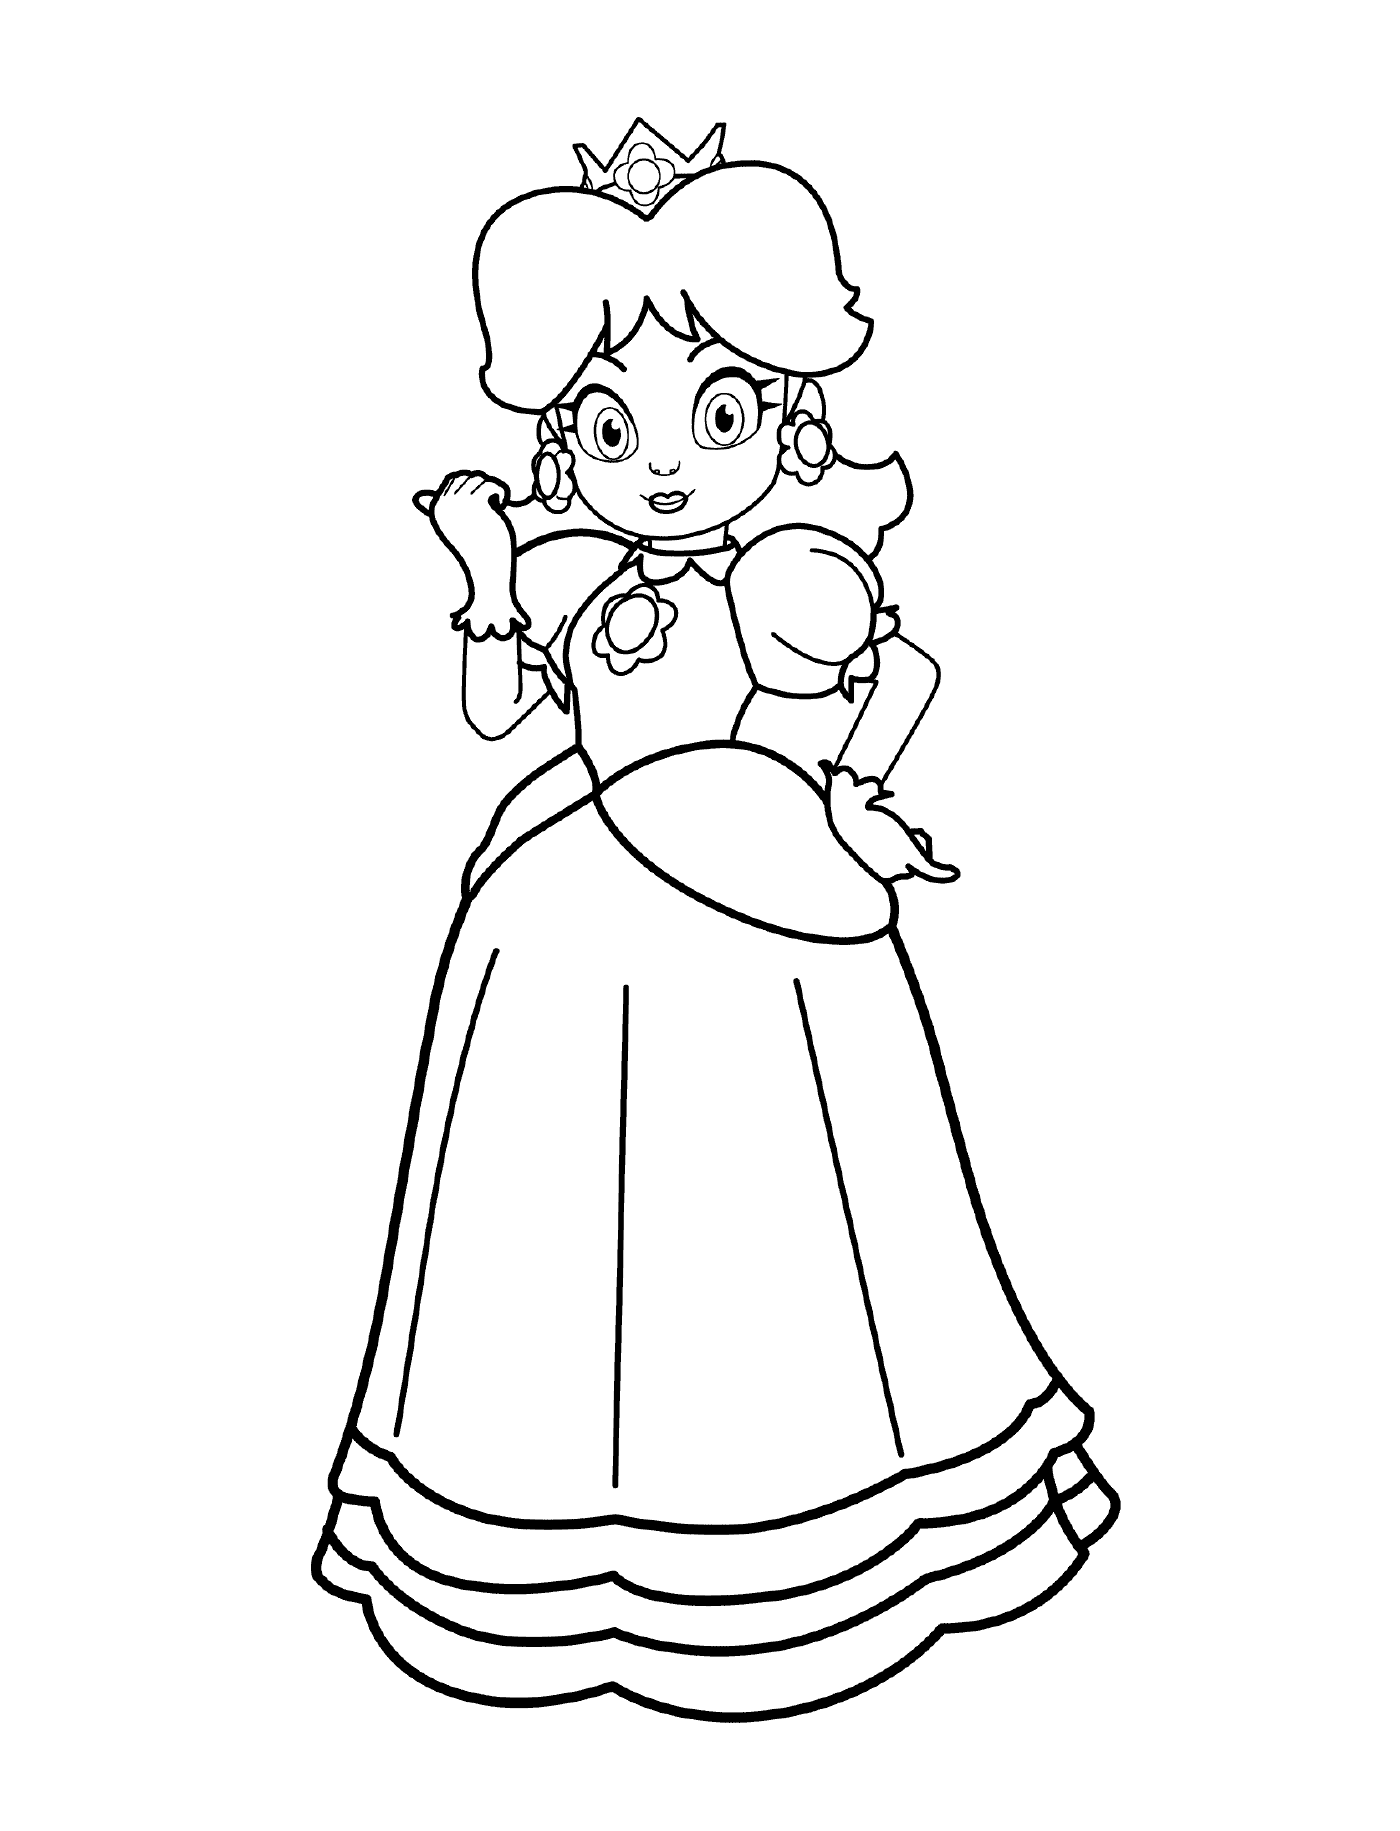  Principessa Daisy, una donna vestita 